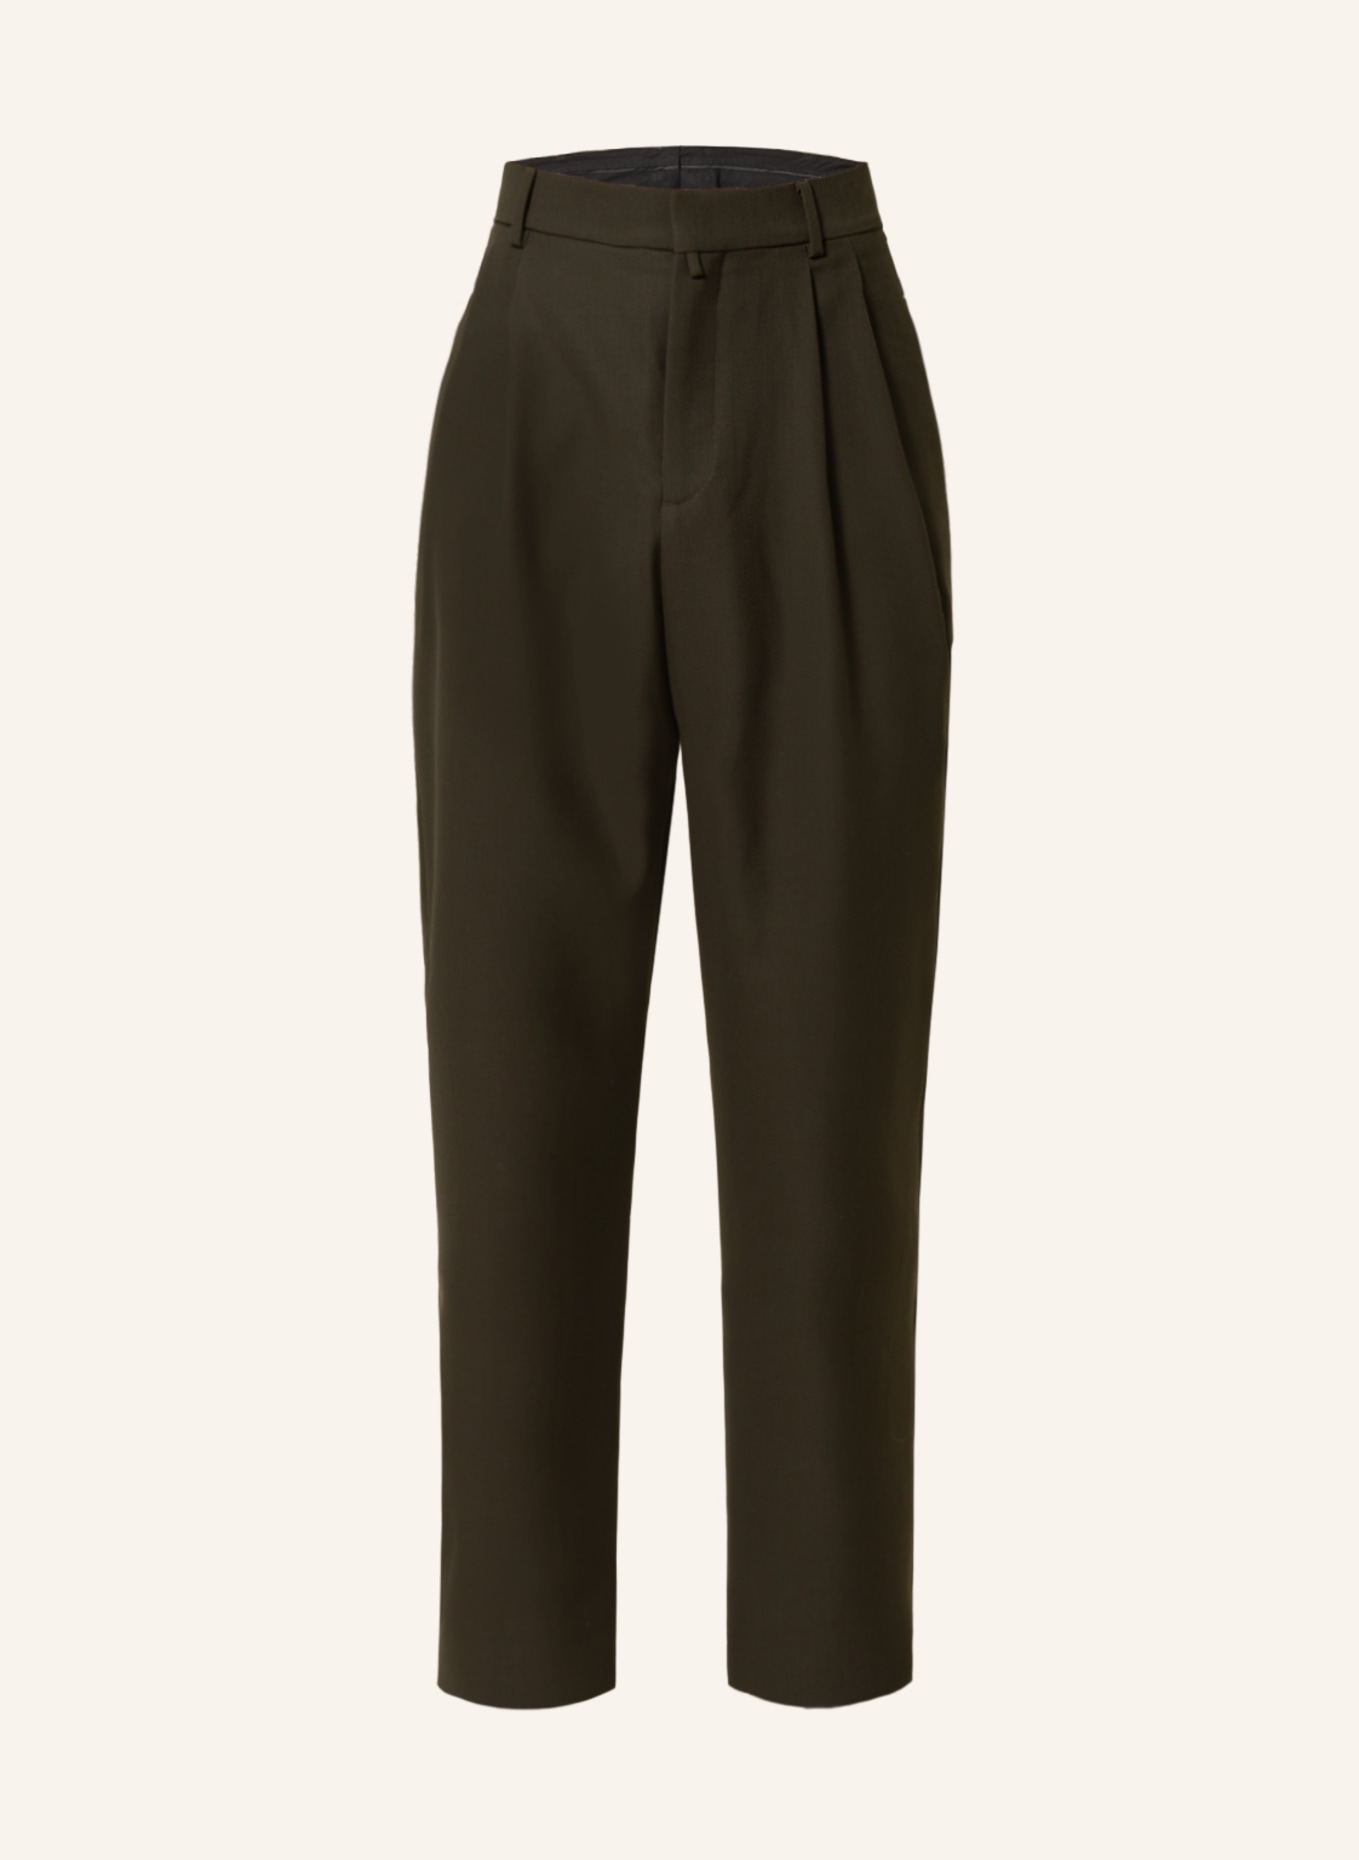 032c Piqué trousers regular fit , Color: OLIVE (Image 1)